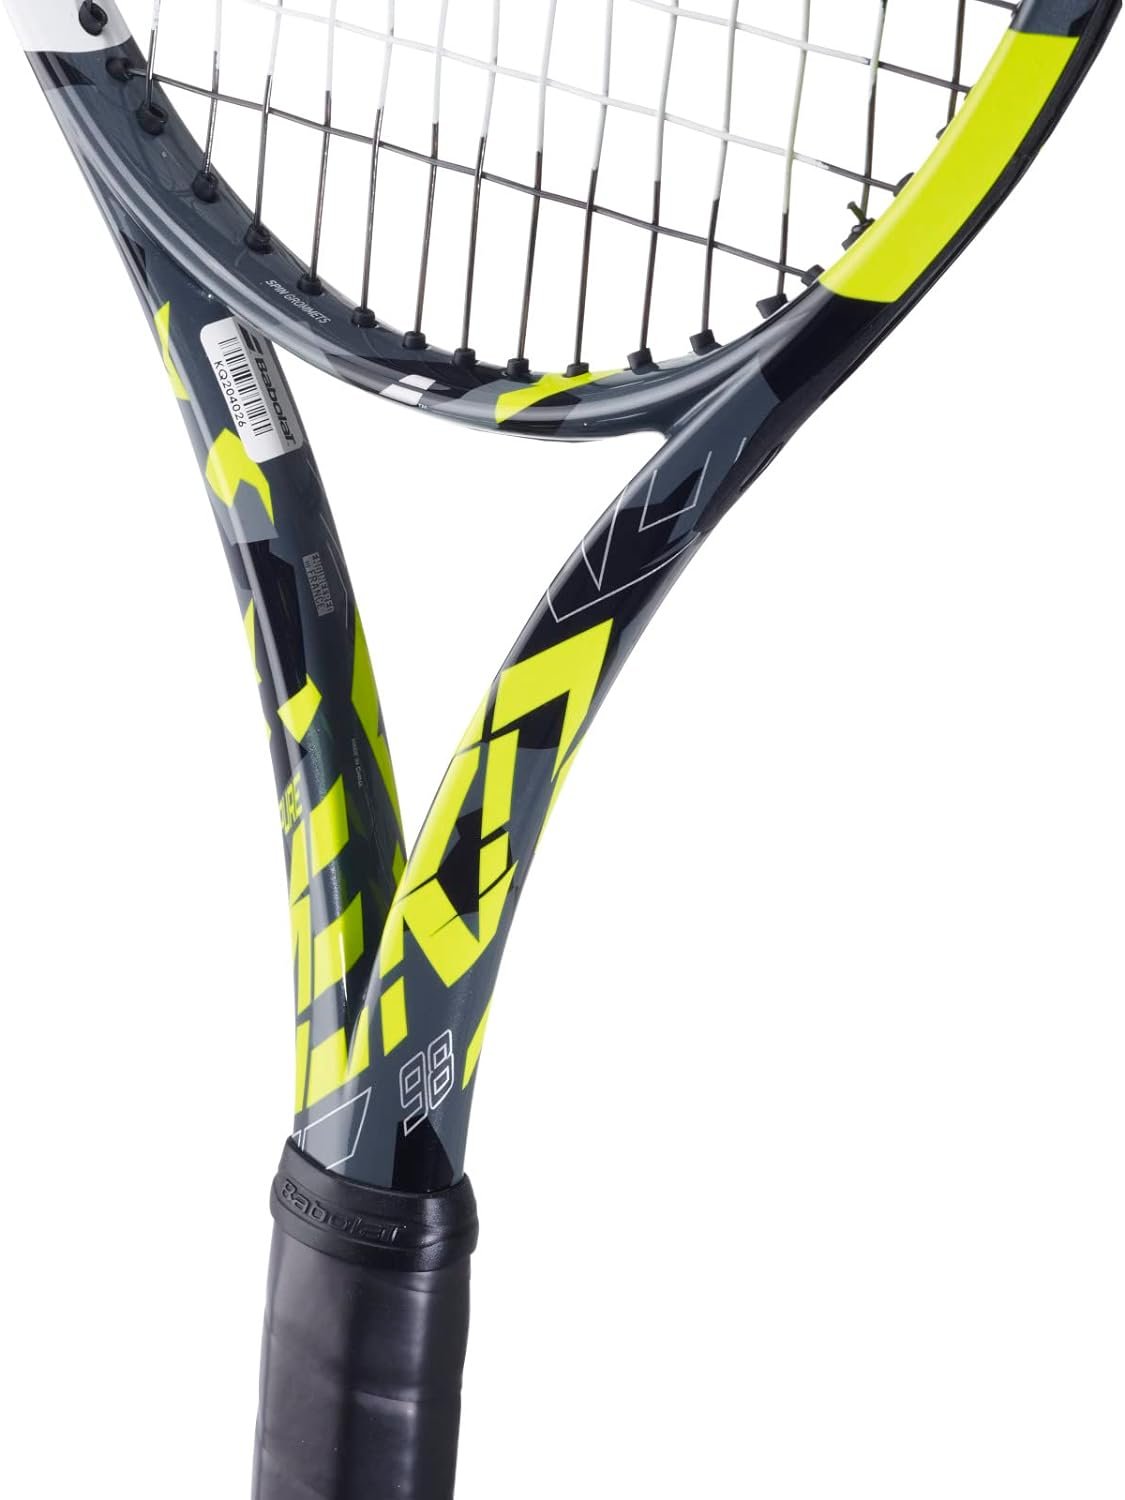 Babolat 2023 Pure Aero 98 Tennis Racquet